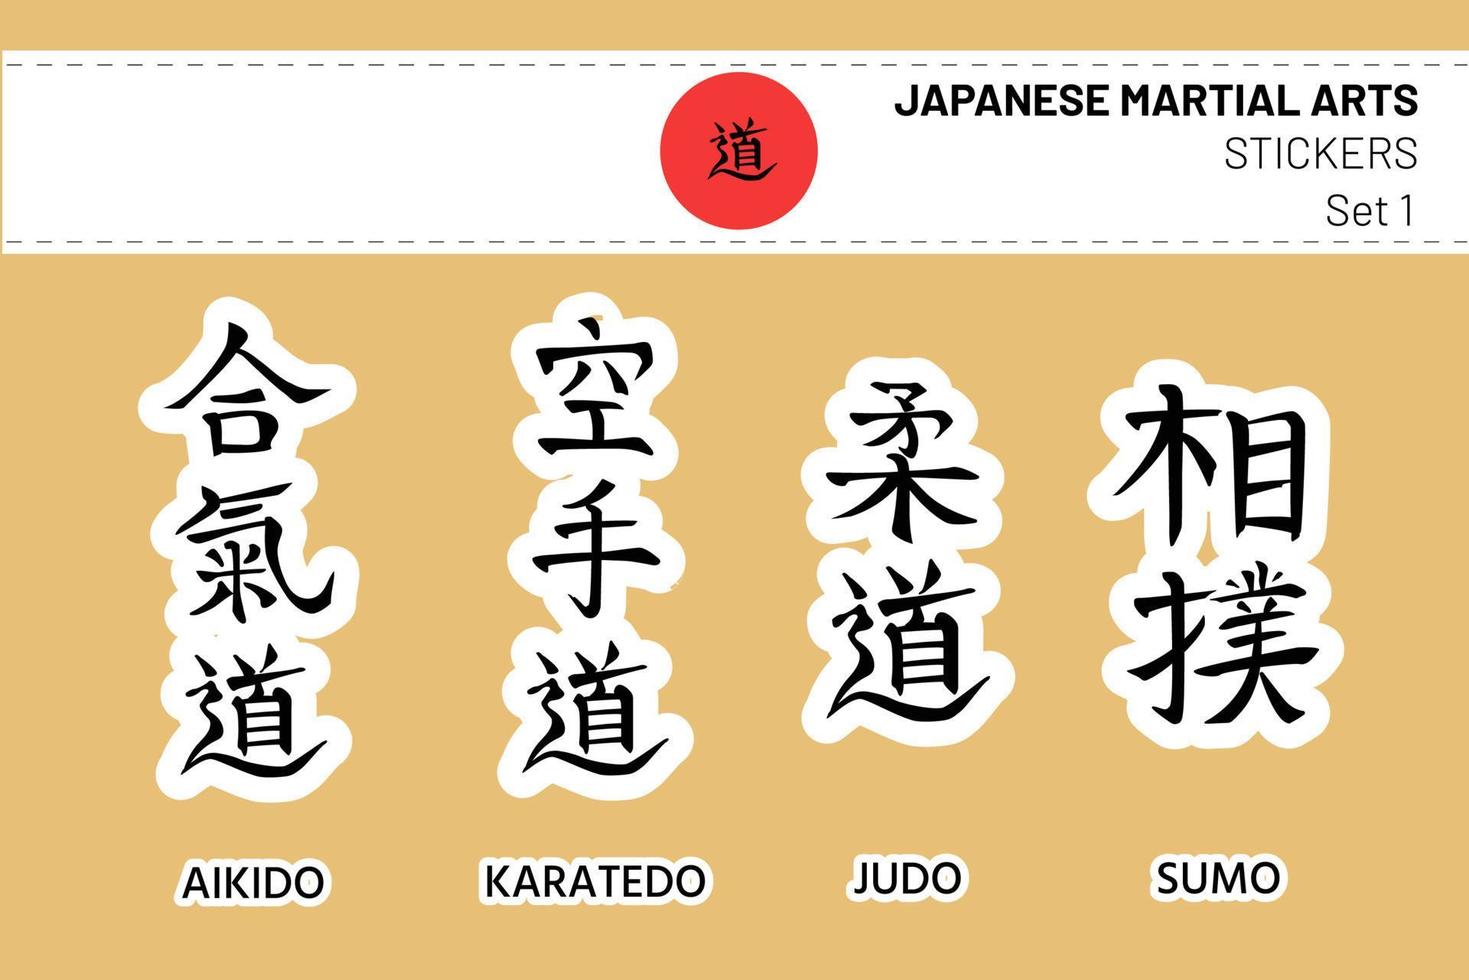 aikido, kárate do, kyudo, sumo. conjunto de jeroglíficos caligráficos editables o kanji, nombres de artes marciales japonesas en forma de pegatinas. franja blanca como diadema hachimaki y bandera de japón vector